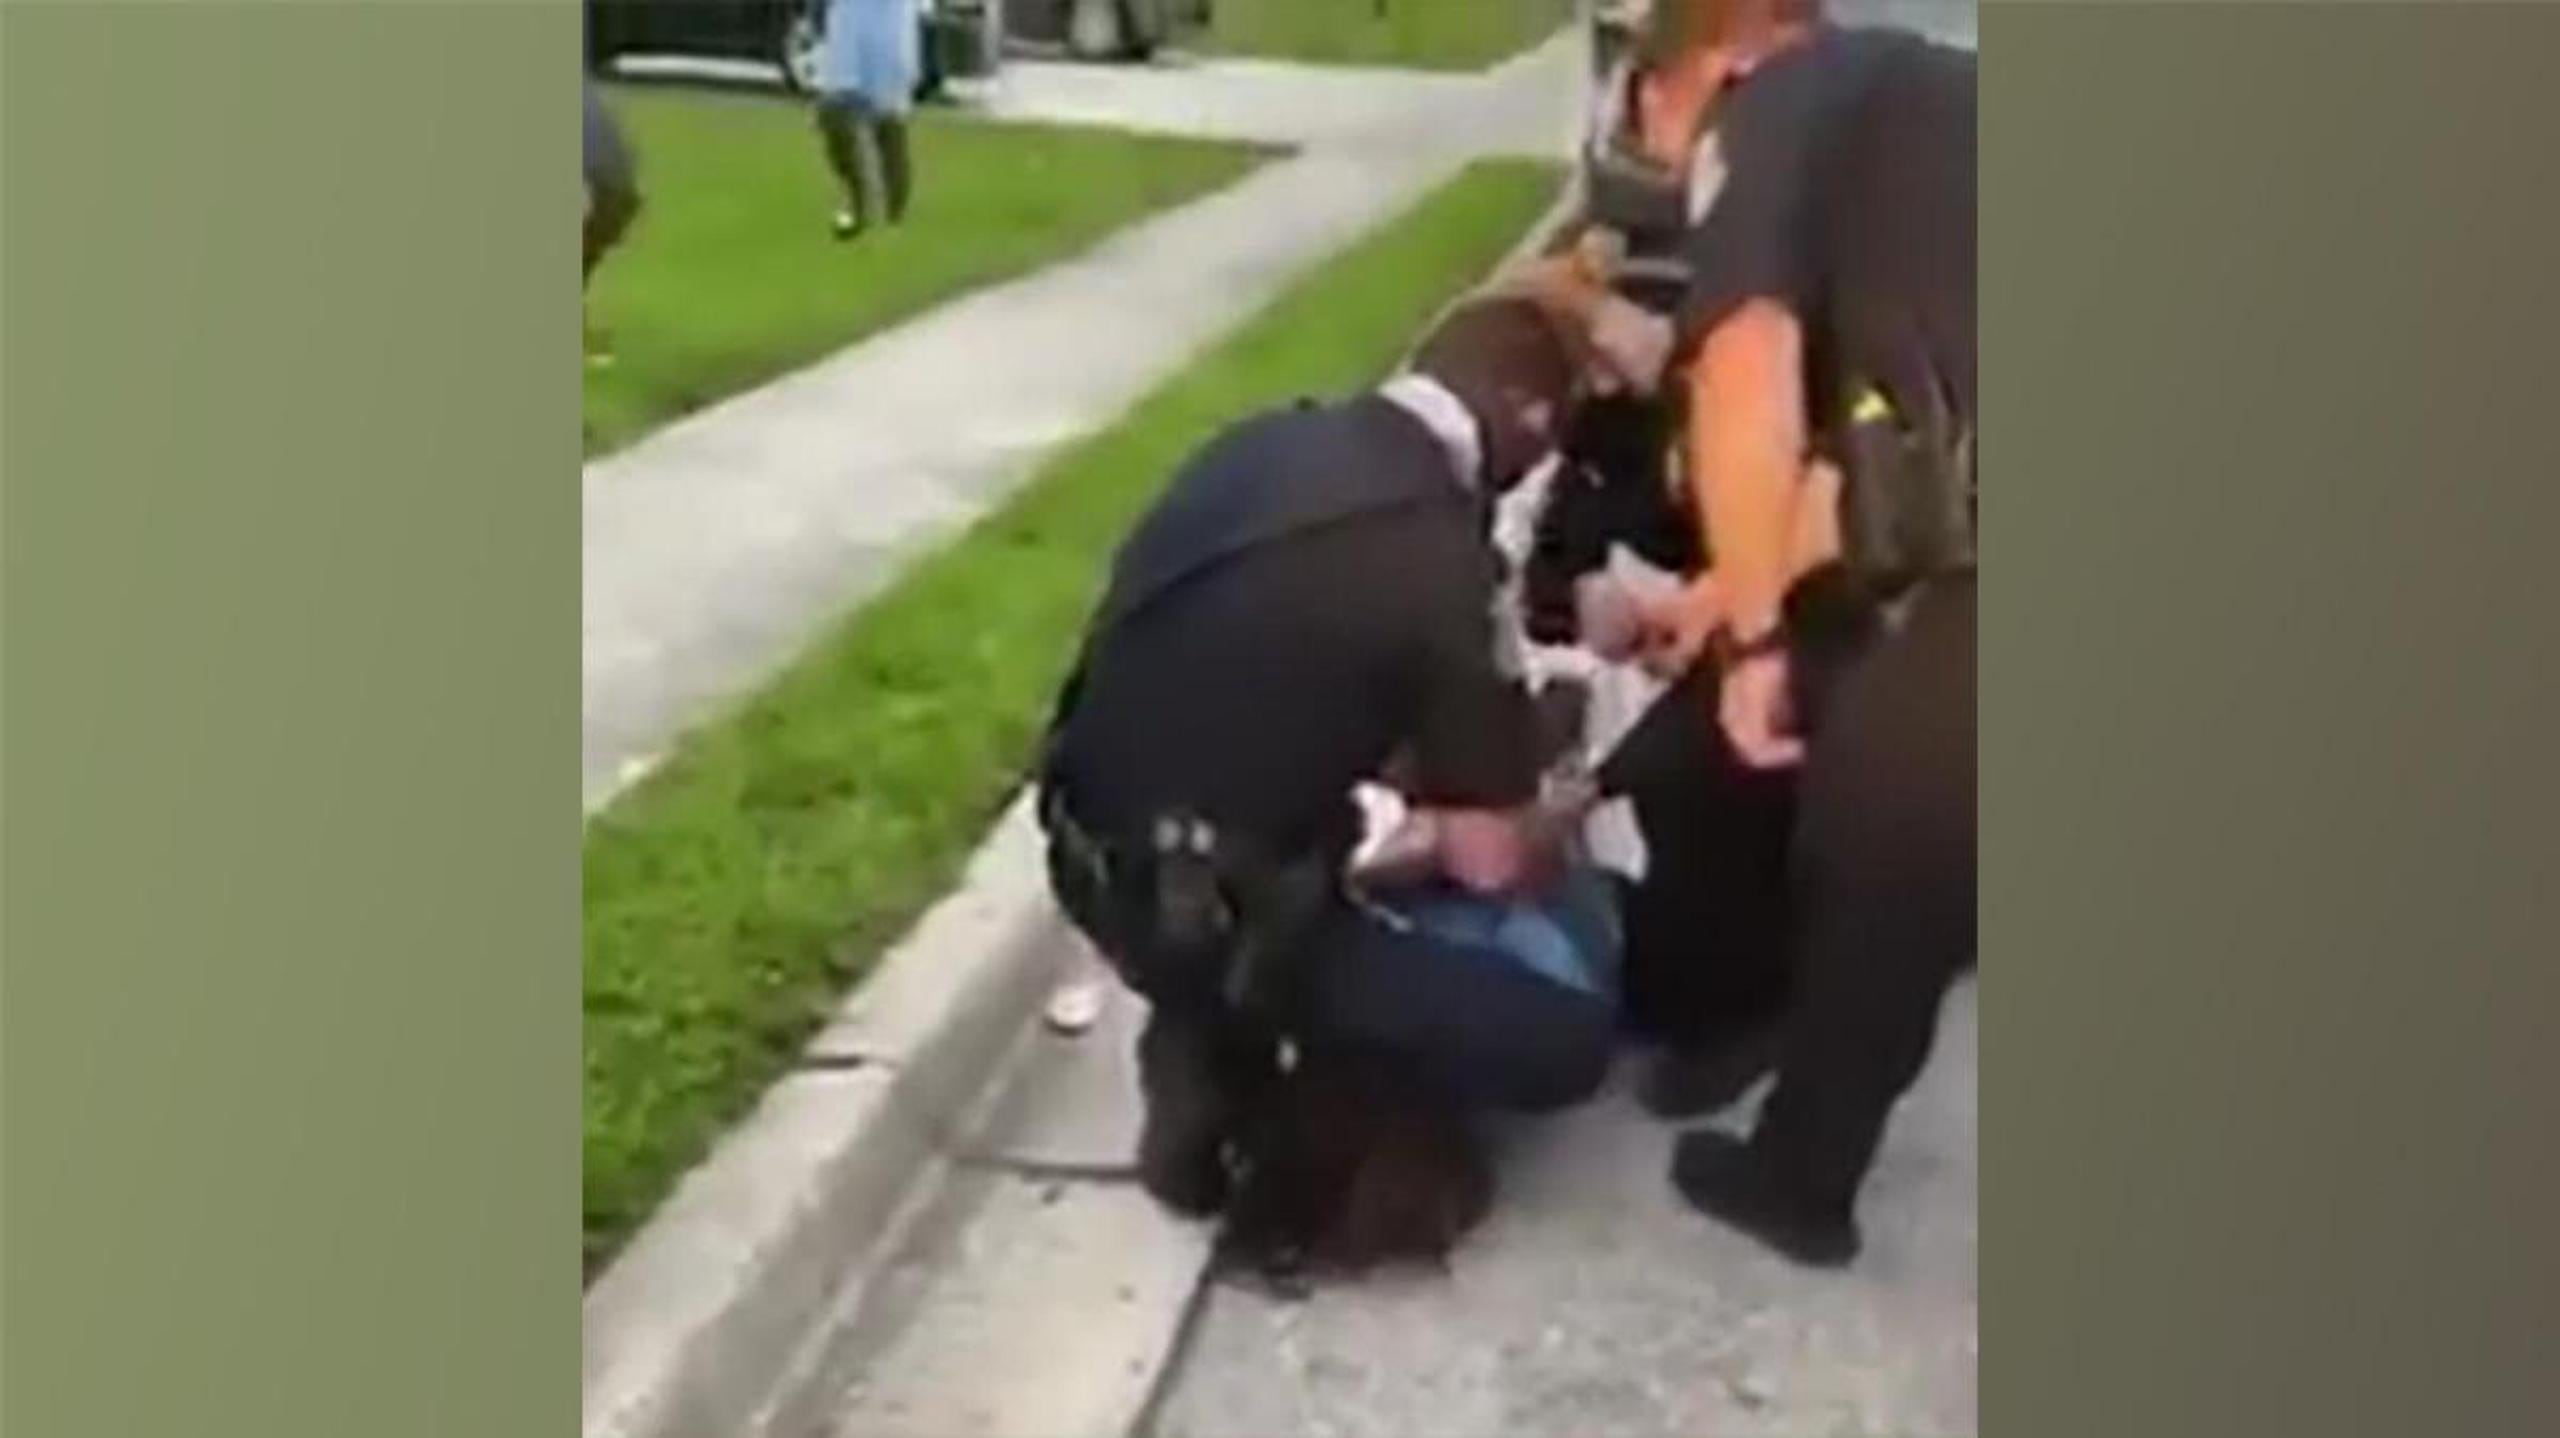 El video muestra a dos agentes de la policía de Sarasota cuando someten a Patrick Carroll, de 27 años, al acudir a una denuncia de violencia doméstica. Un tercer agente observa la escena.